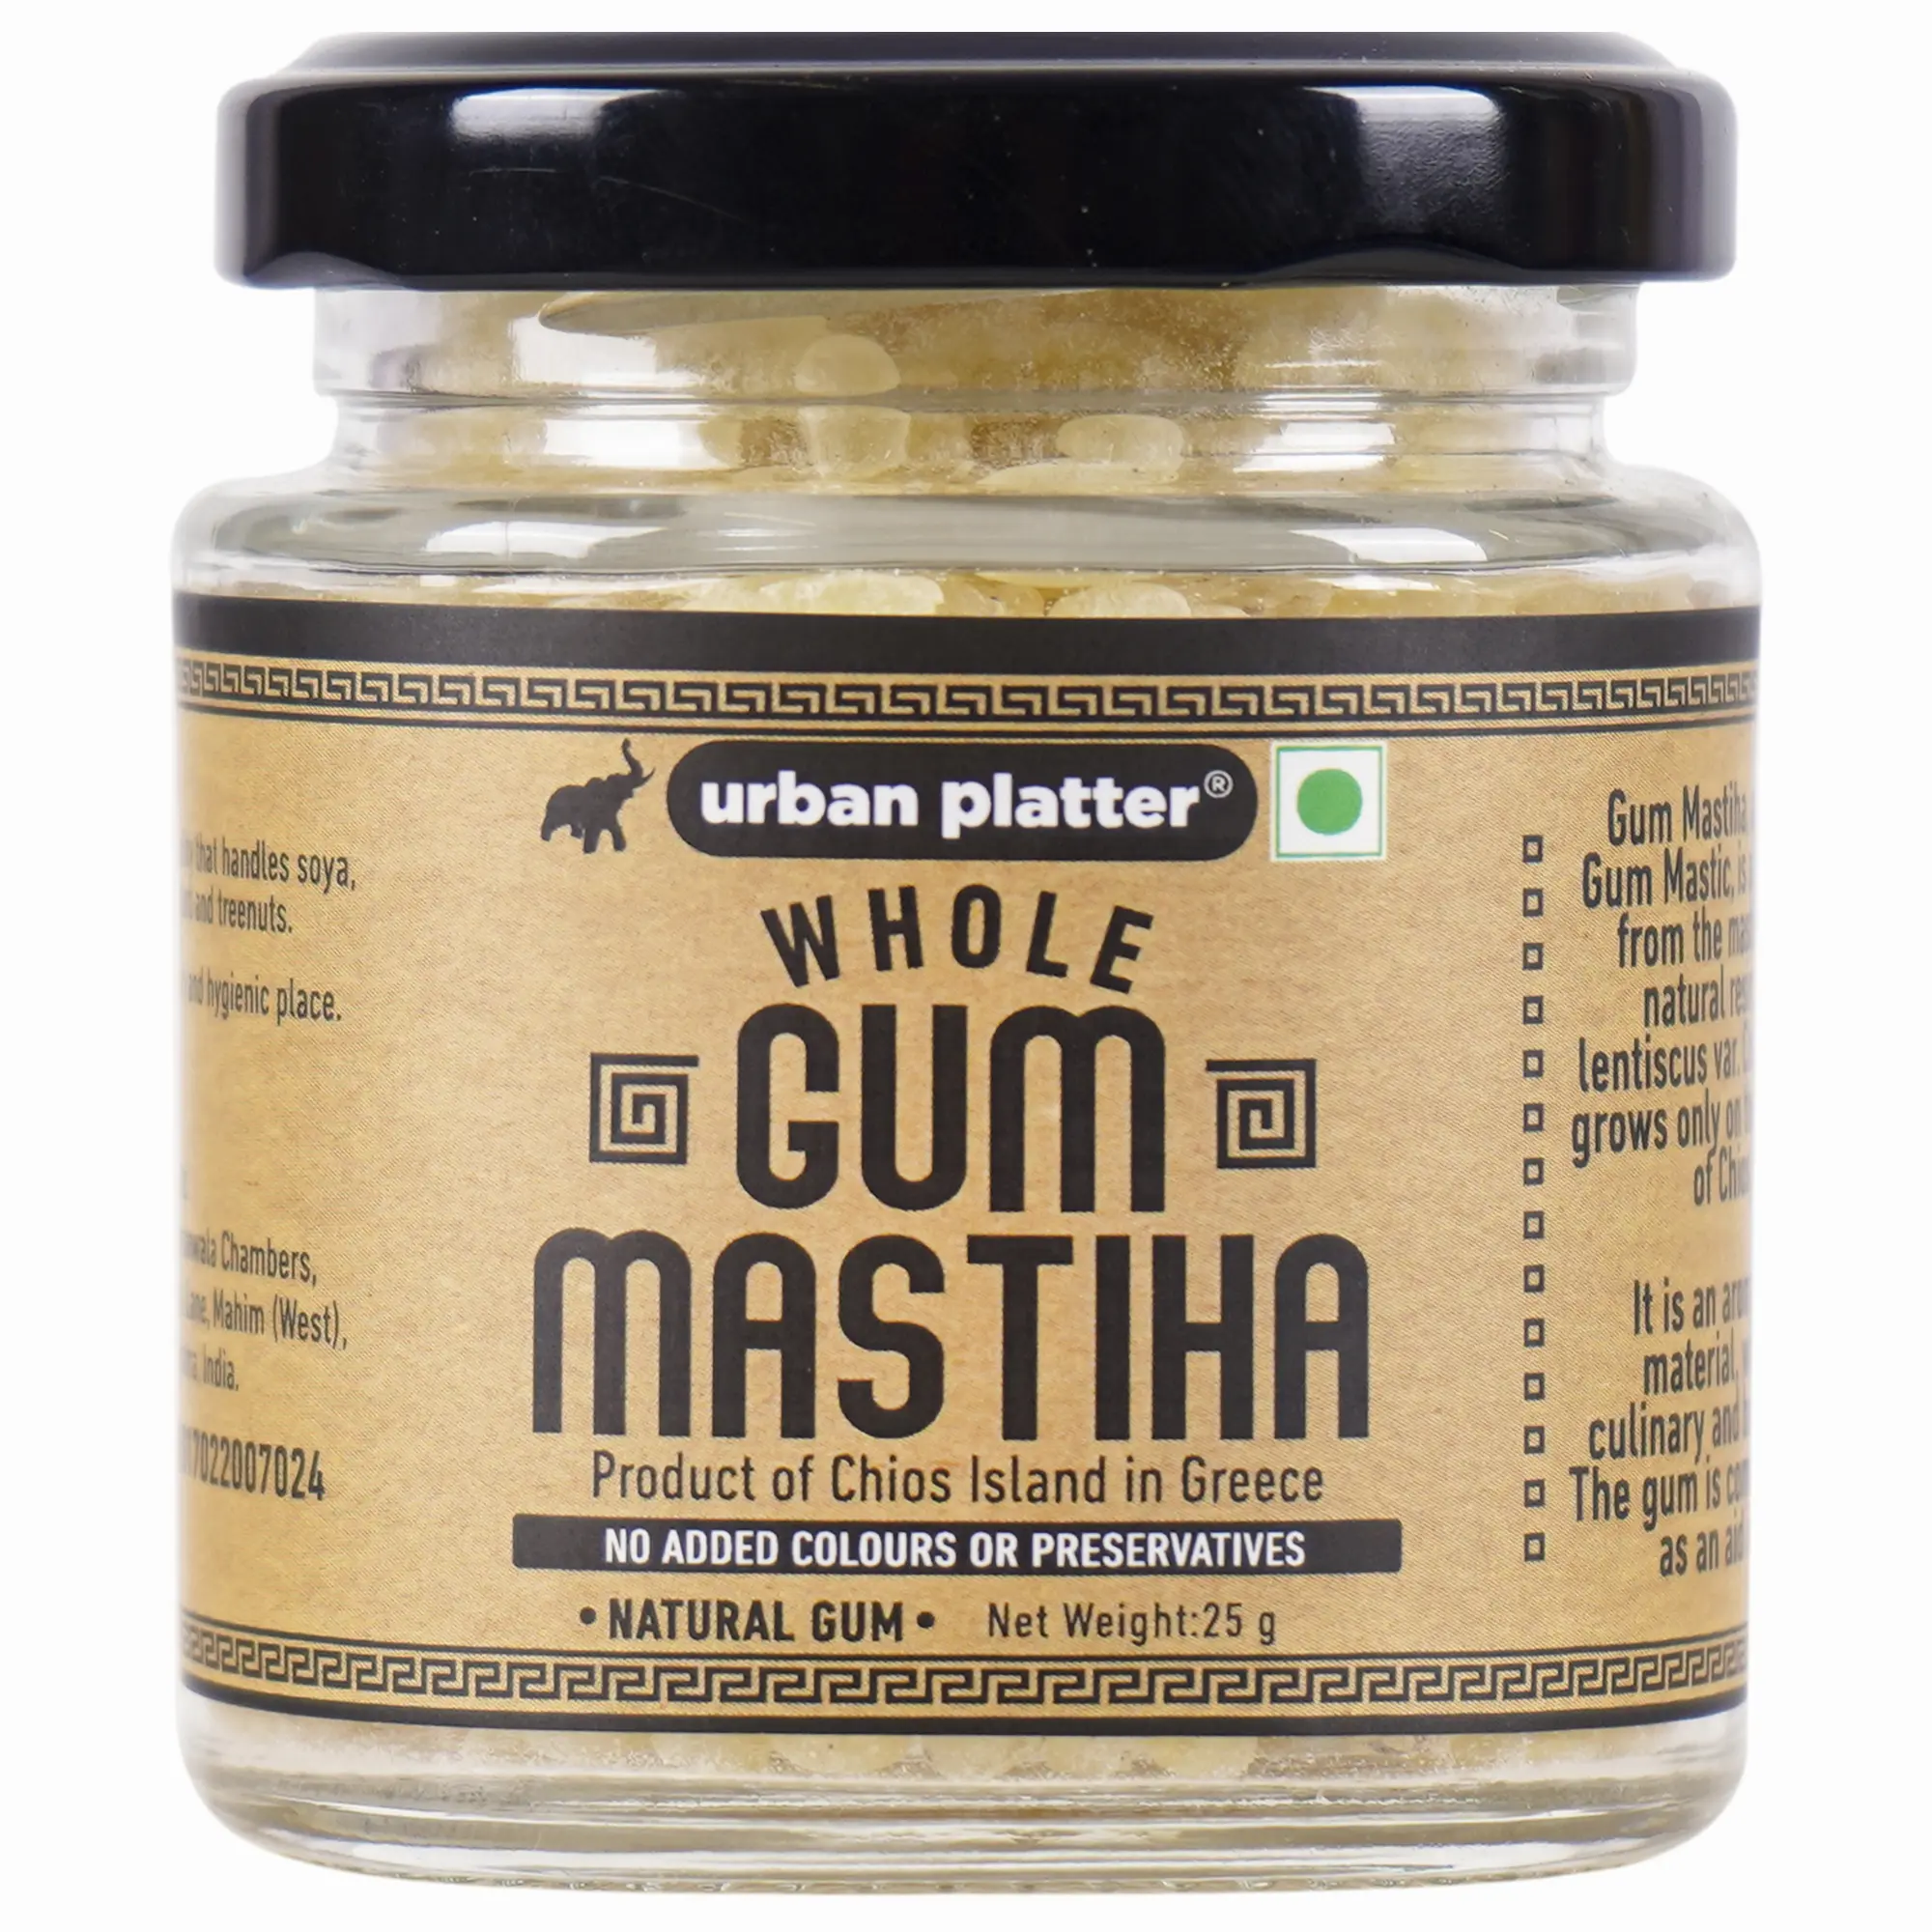 Urban Platter Gum Mastiha, 25g [Mastic Gum / Mastiha of Chios